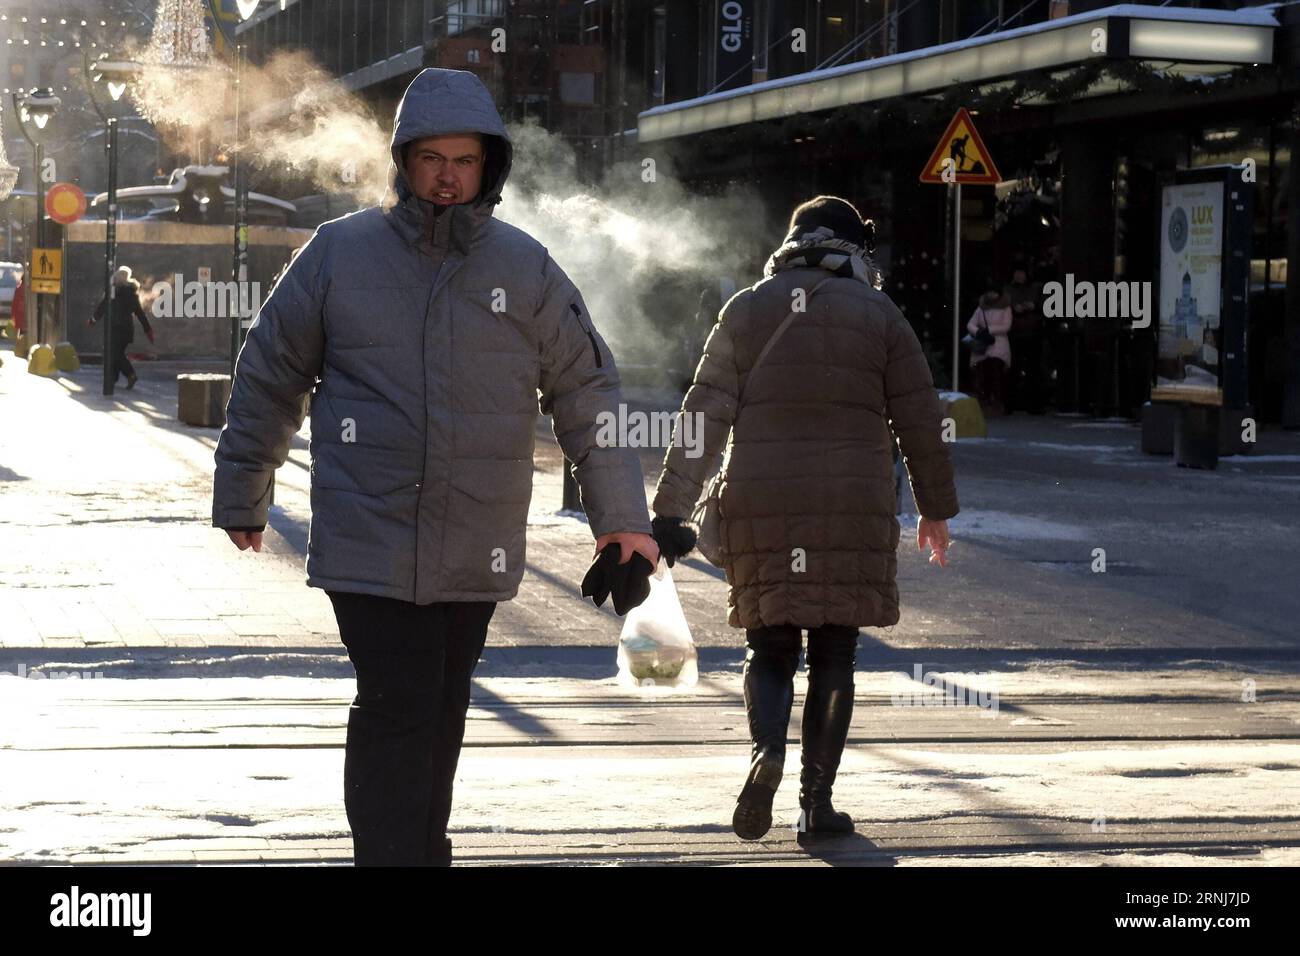 HELSINKI, 5. Januar 2017 - Fußgänger gehen in Helsinki, Finnland, 5. Januar 2017 auf der Straße. In den ersten Tagen des neuen Jahres hat Finnland einen plötzlichen Rückgang der Wintertemperaturen erlebt. Die Behörden haben Frostwarnungen gegeben, um die Bewohner daran zu erinnern, sich warm zu halten und Gesundheitsrisiken zu vermeiden. In der Hauptstadt Helsinki, die sich im südlichen Küstengebiet befindet, sanken die Temperaturen am Freitag auf weniger als minus 19 Grad Celsius, während in Muonio im Nordwesten Lapplands die Temperaturen am Donnerstag auf minus 40 Grad Celsius sanken. ) (Djj) FINNLAND-HELSINKI-PLÖTZLICHER TEMPERATURABFALL SergeixSt Stockfoto